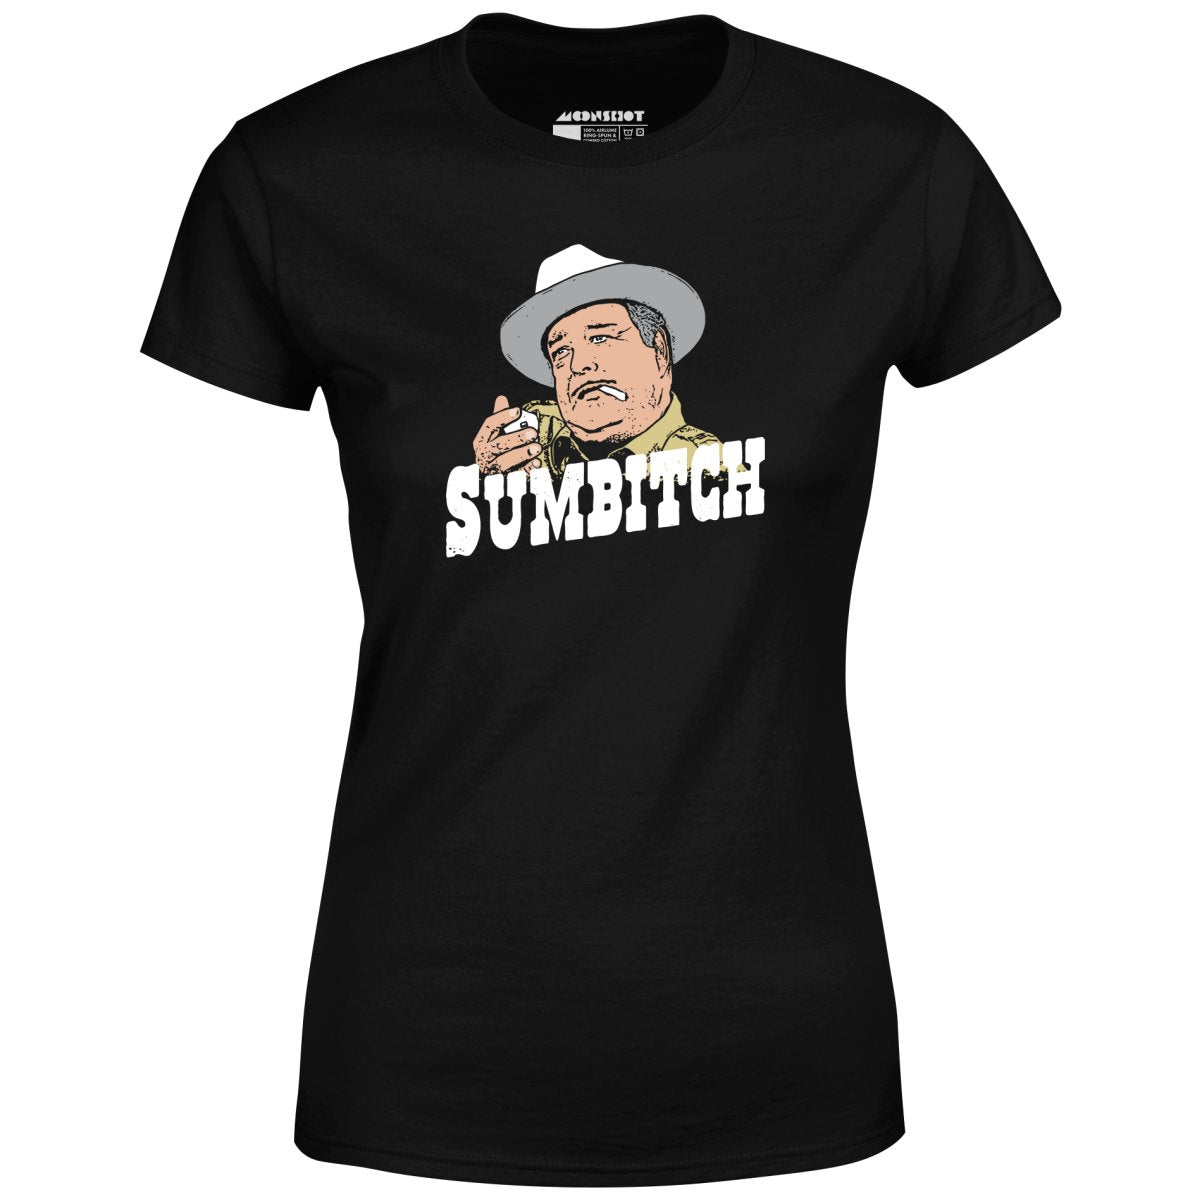 Sumbitch - Women's T-Shirt